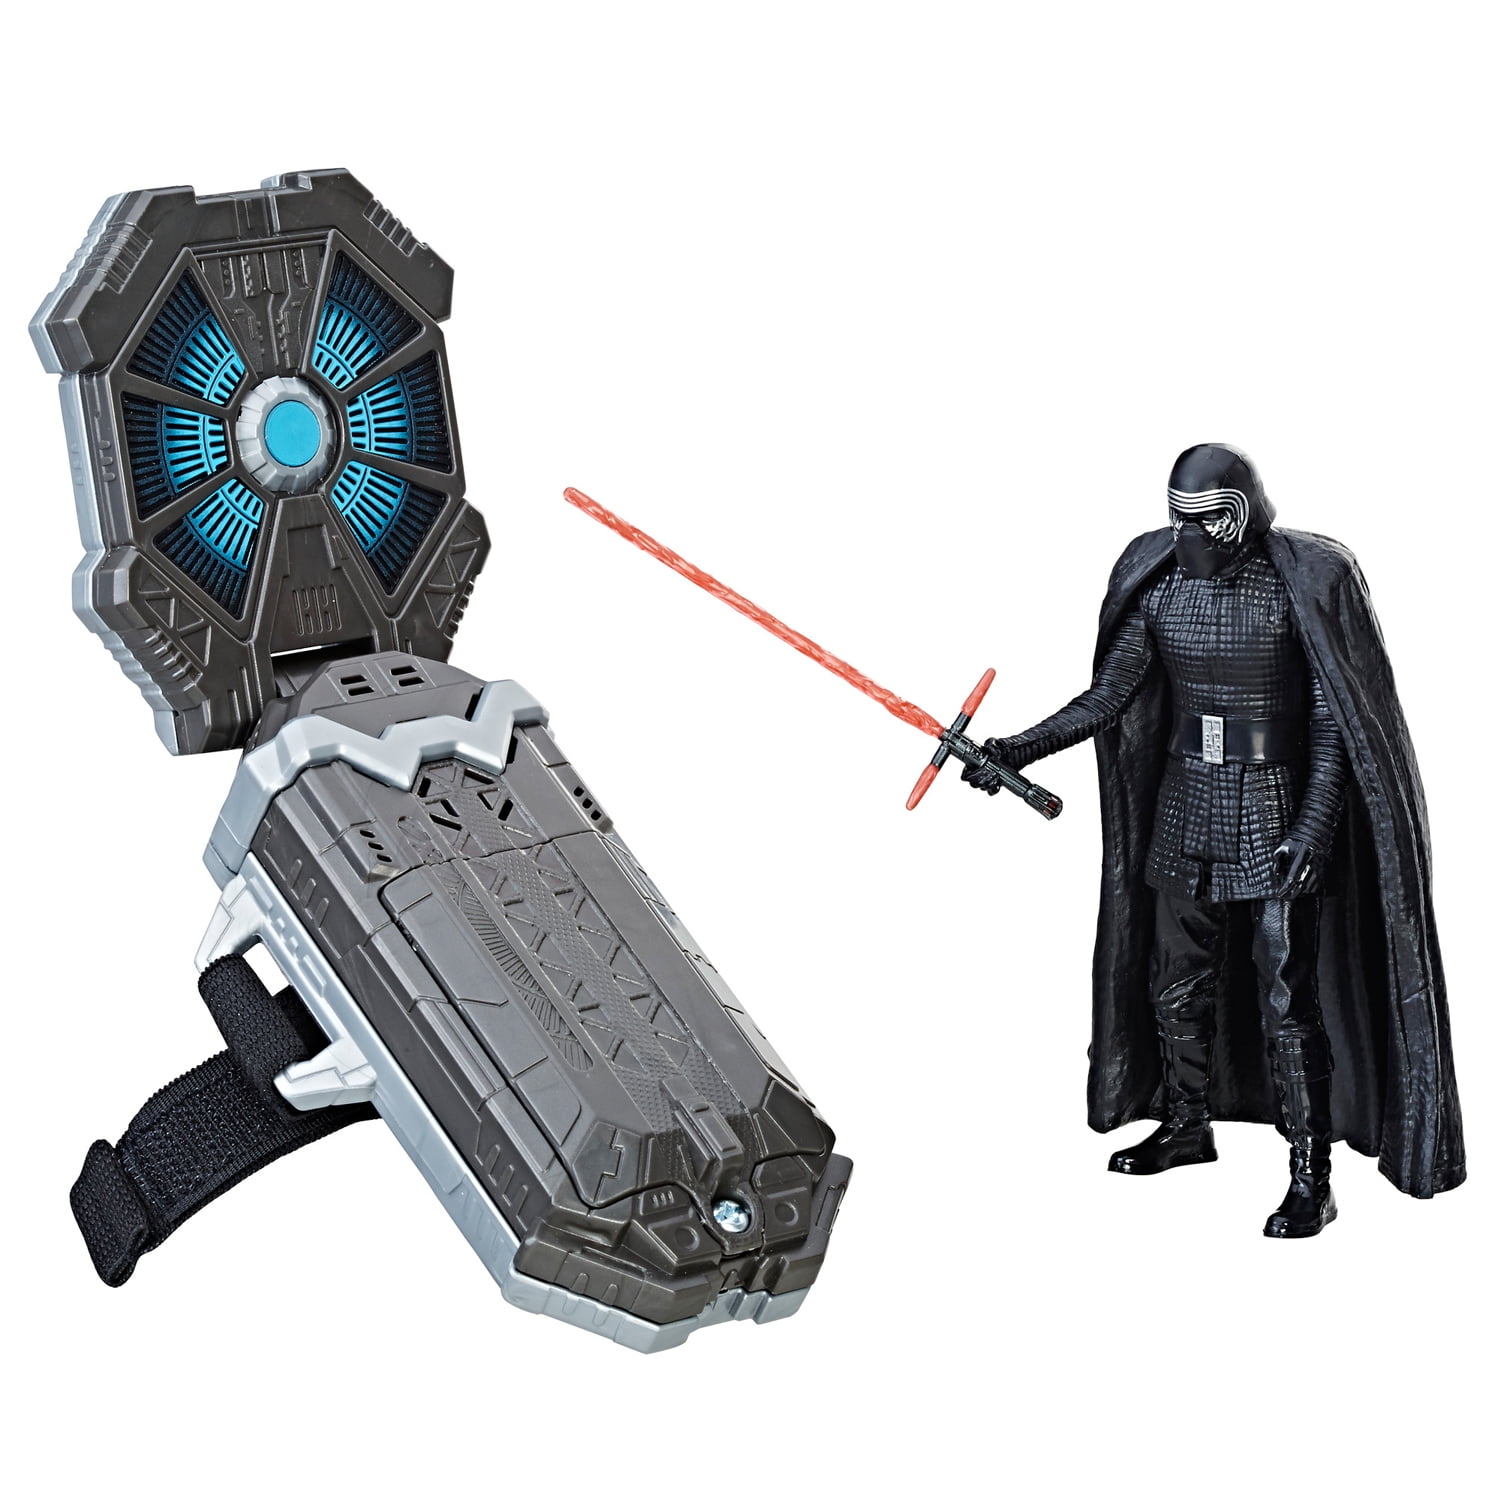 Star Wars Force Link Starter Set including Force Link Kylo Ren Figure